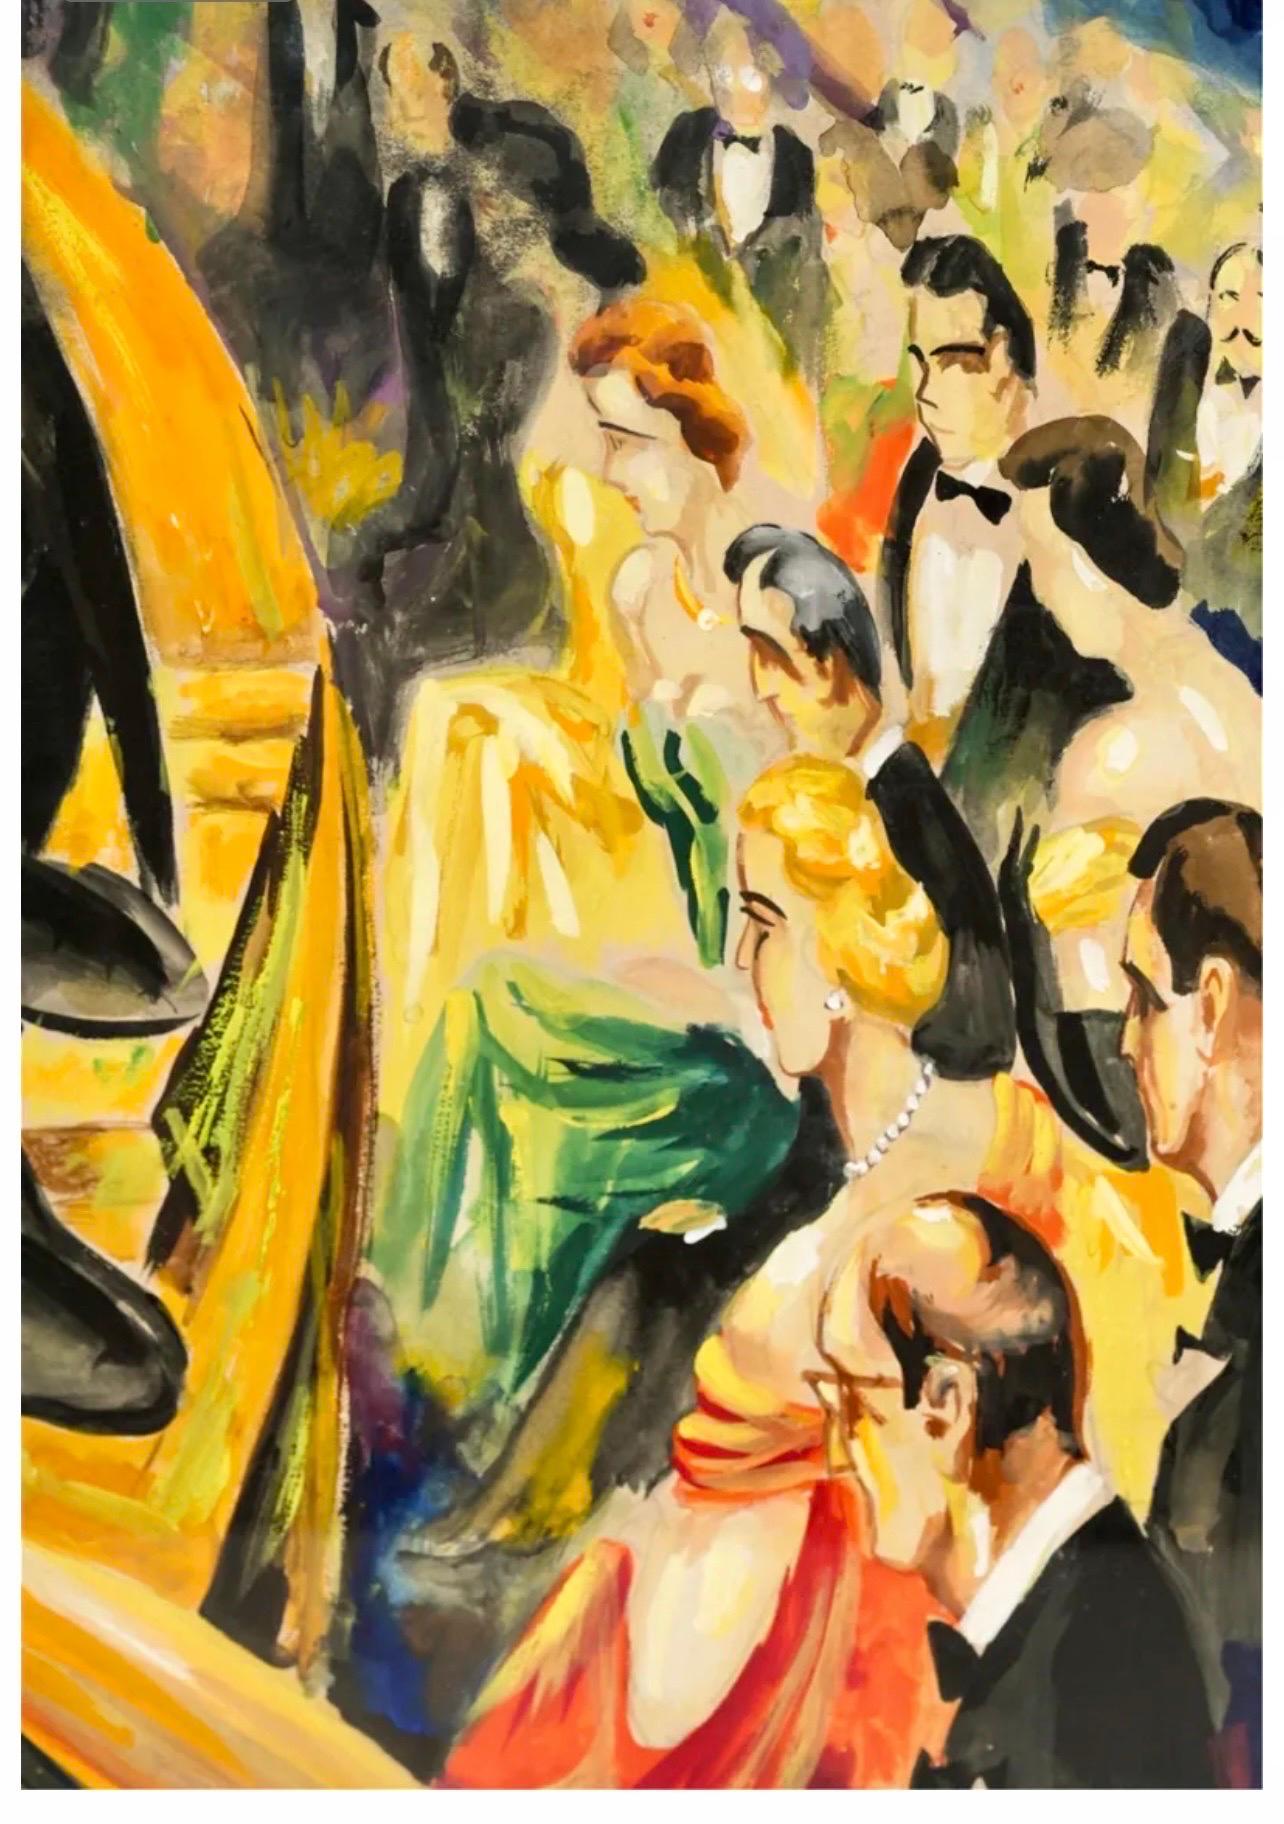 Grand tableau moderniste de l'école israélienne de Bezalel sur l'orchestre de Tel Aviv Moshe Matus - Moderne Painting par Moshe Matus (Matusovsky)